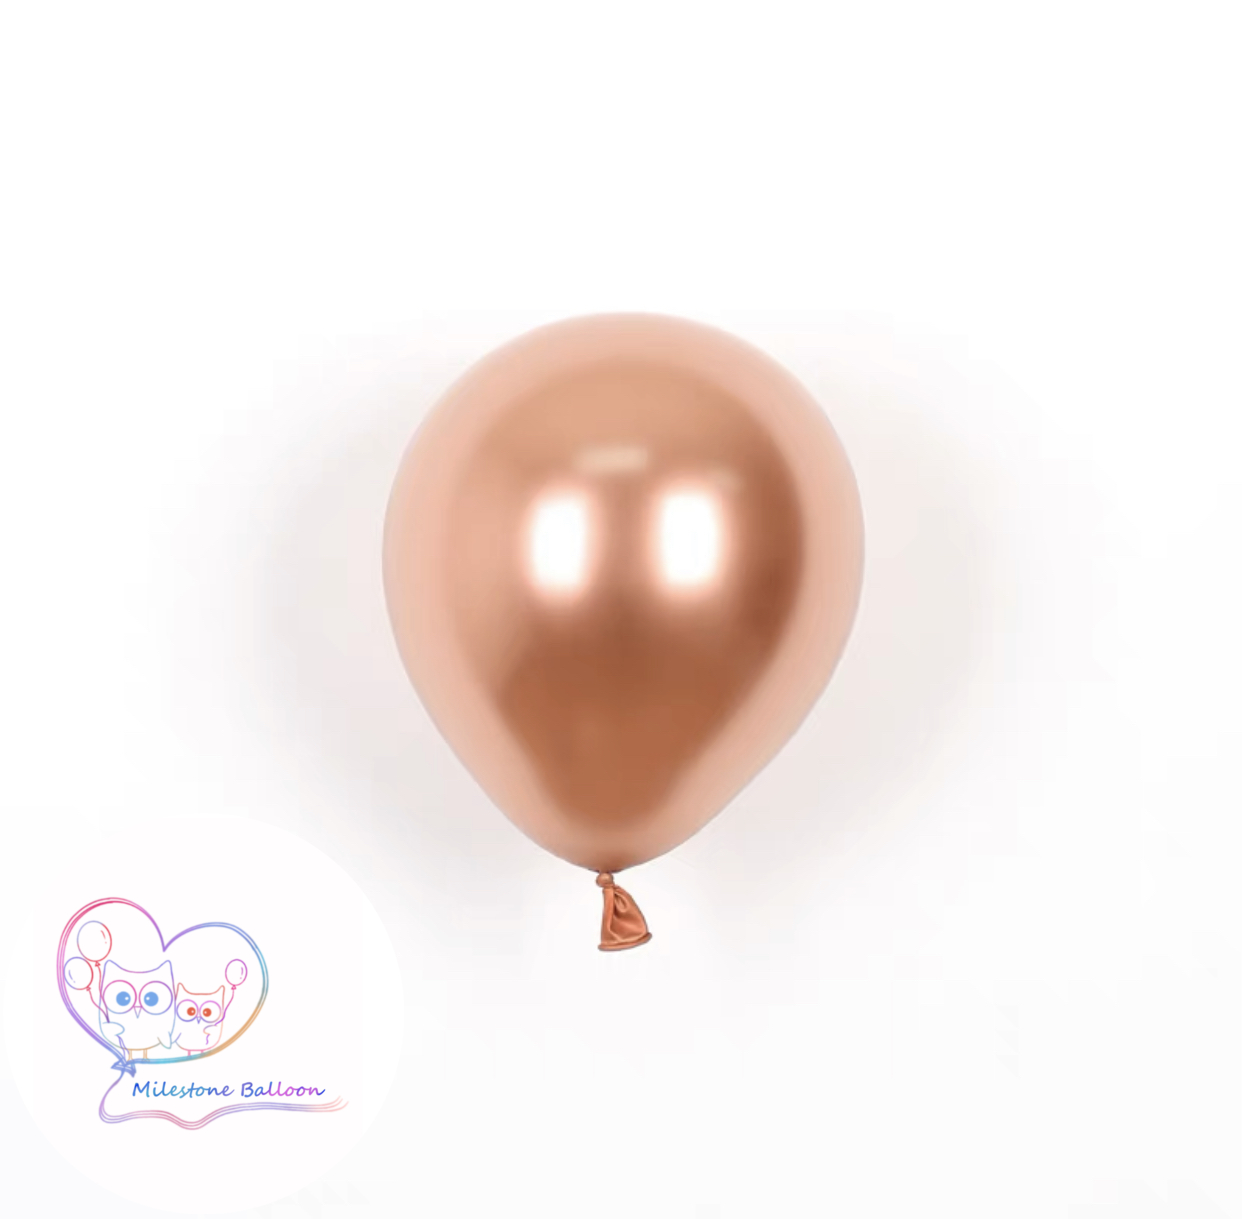 5吋金屬色氣球 (玫瑰金色) (1pc) 5LBM3